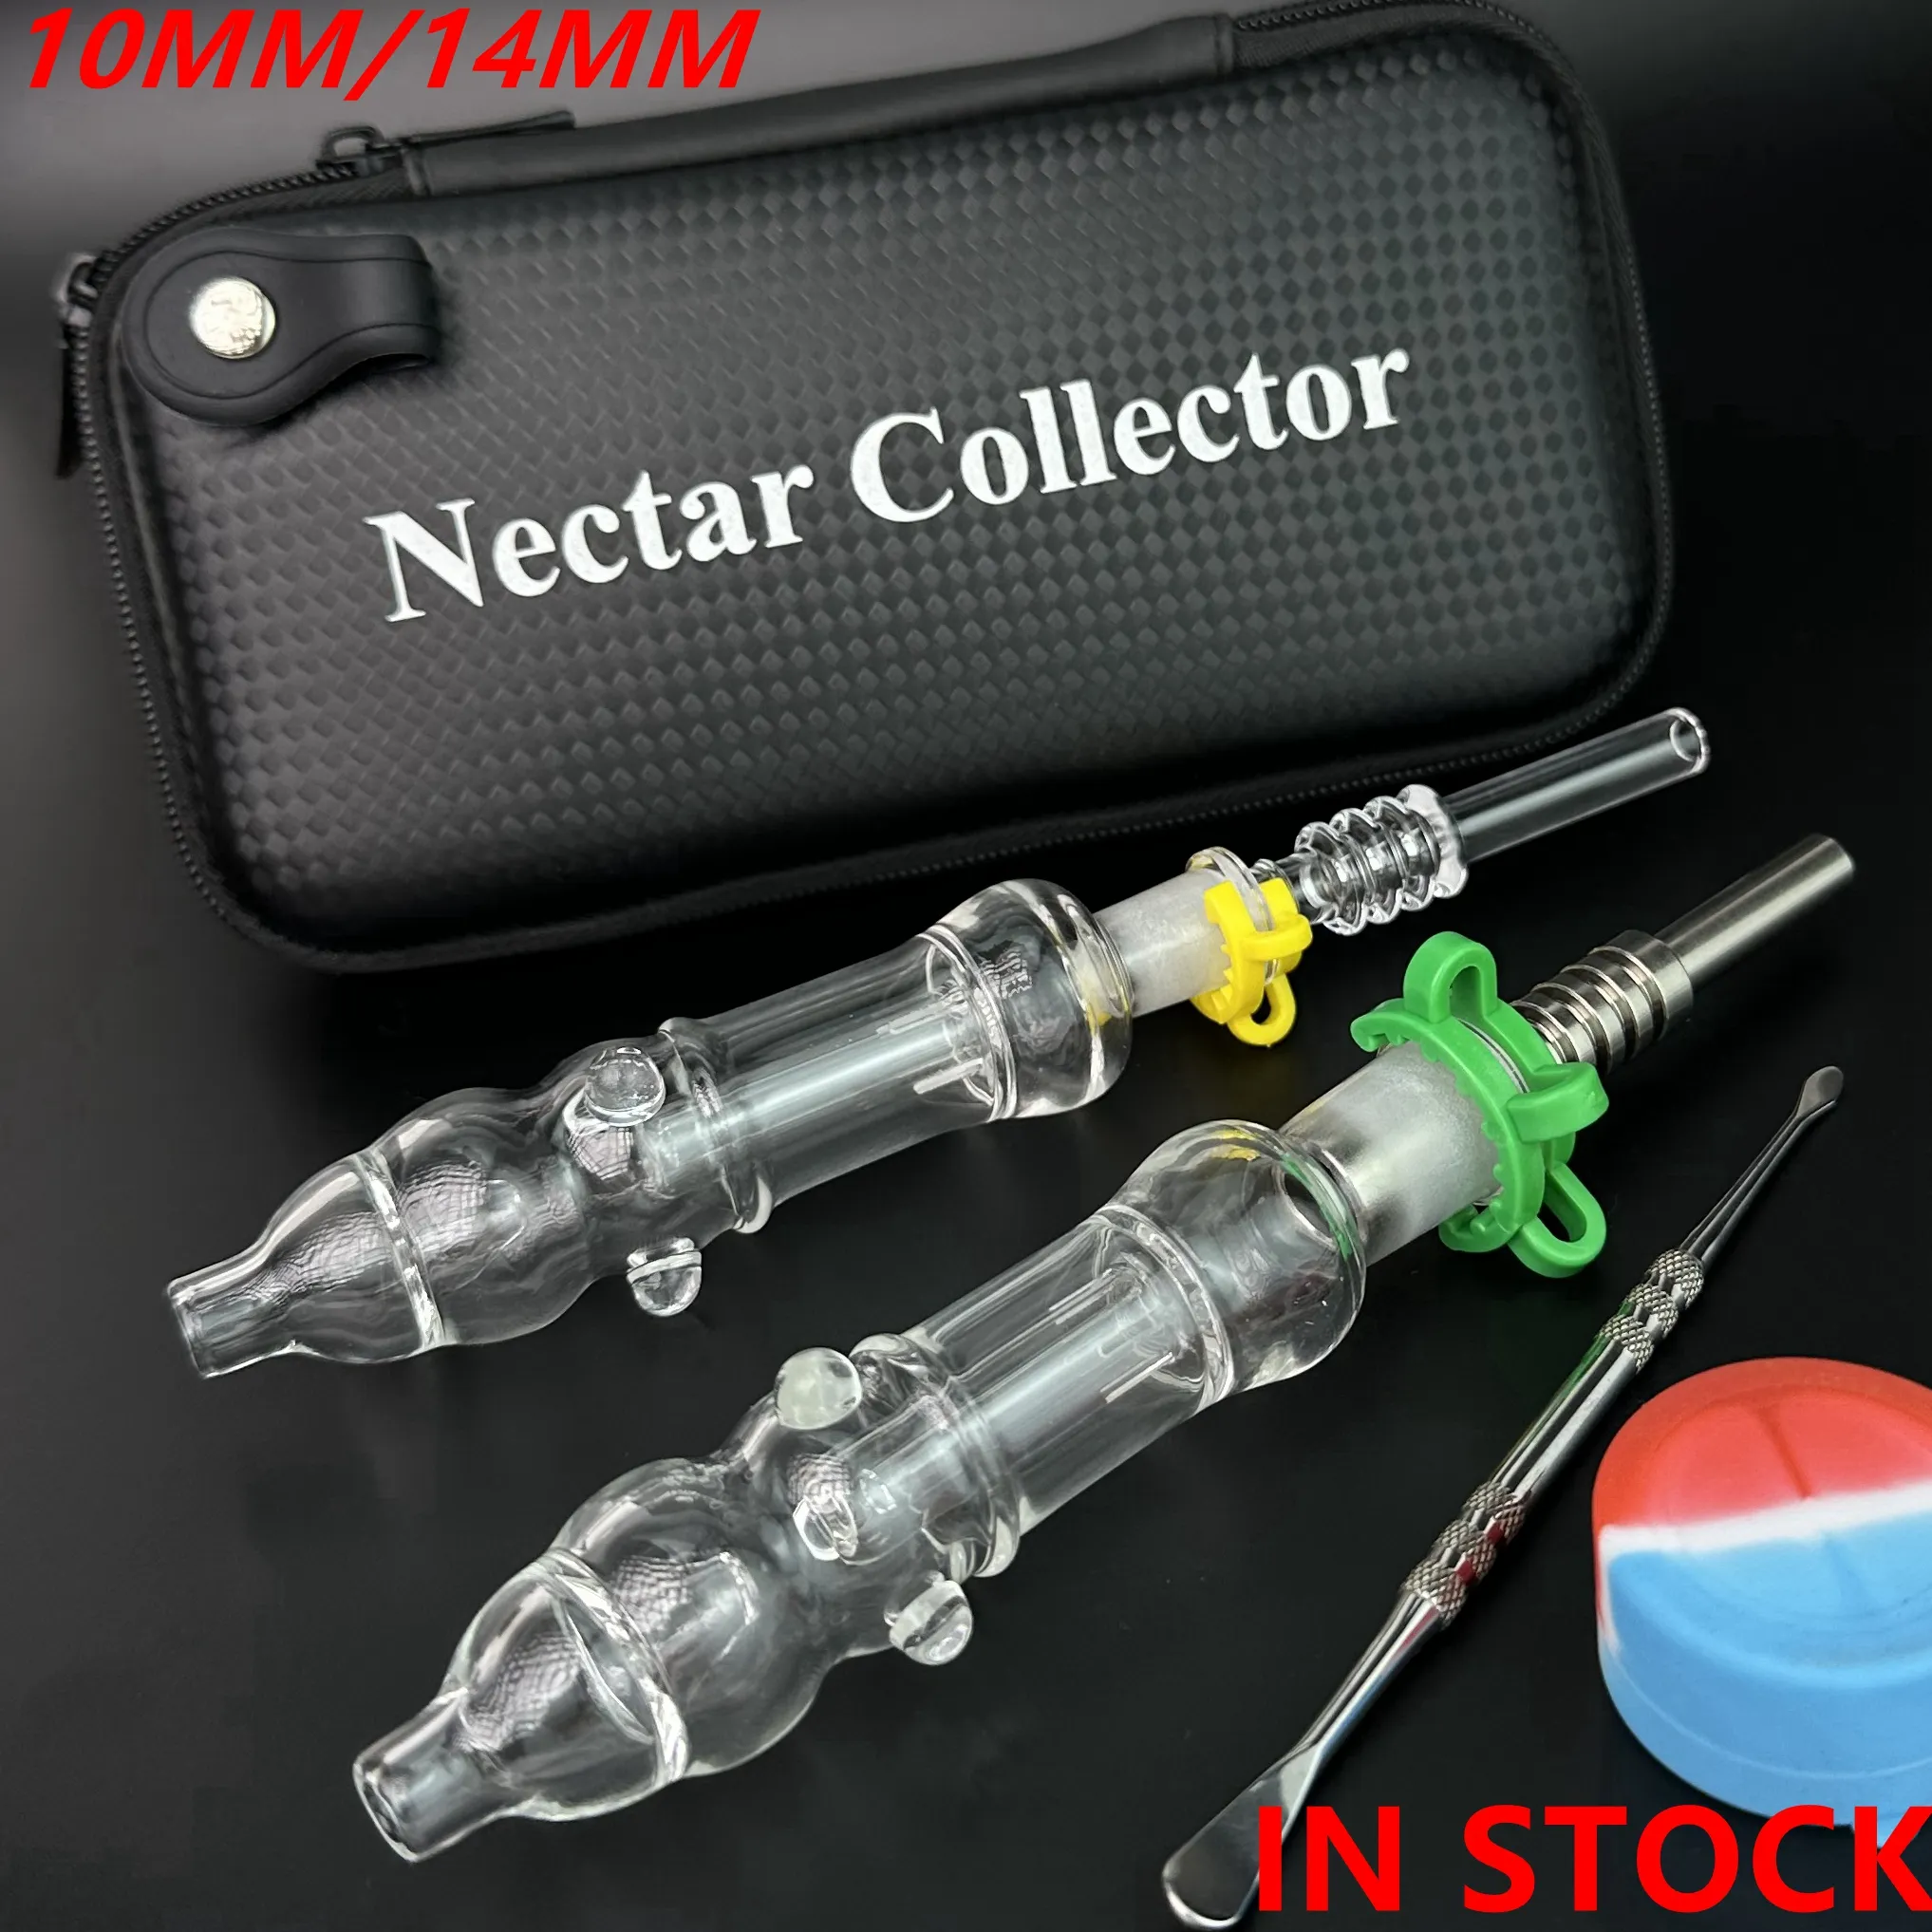 Kit collecteur de nectar avec pointes d'ongles en titane ou pointe en quartz 10 mm 14 mm Kits collecteurs Nector NC Concentré Dab Sac cadeau en paille